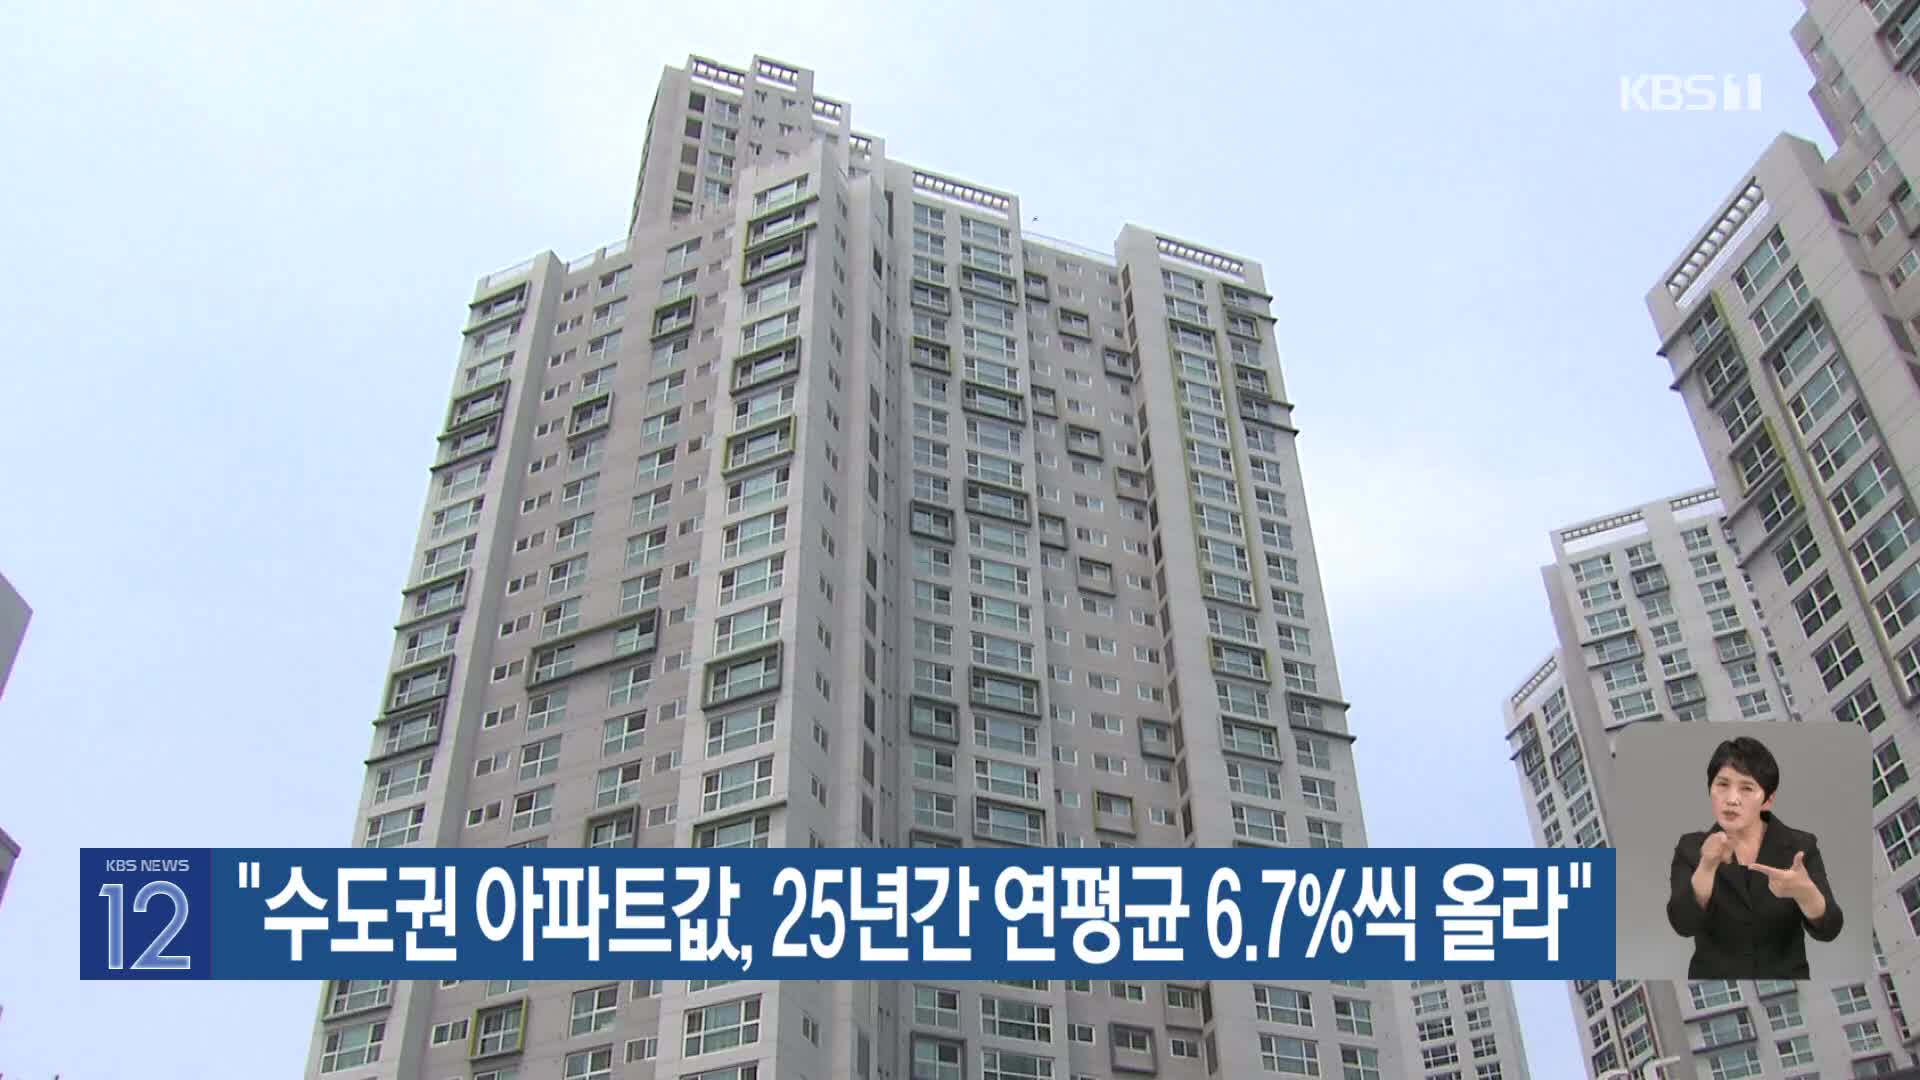 “수도권 아파트값, 25년간 연평균 6.7%씩 올라”